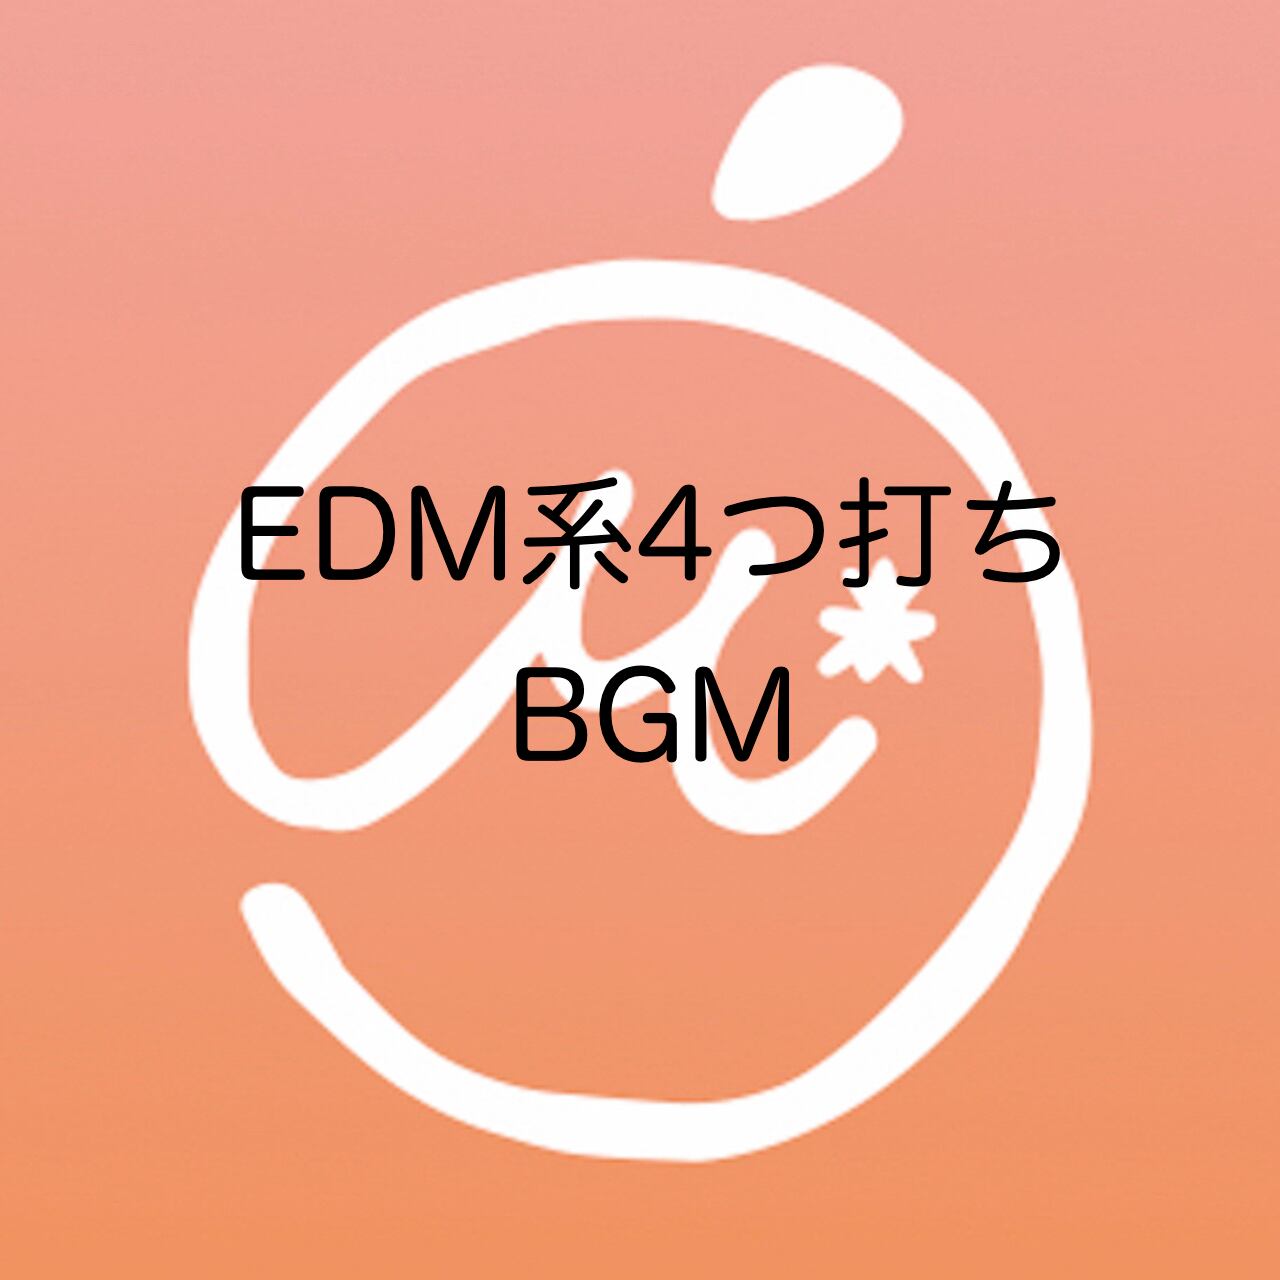 商用利用可 著作権フリーbgm Edm系4つ打ちbgm Mikan Music Shop